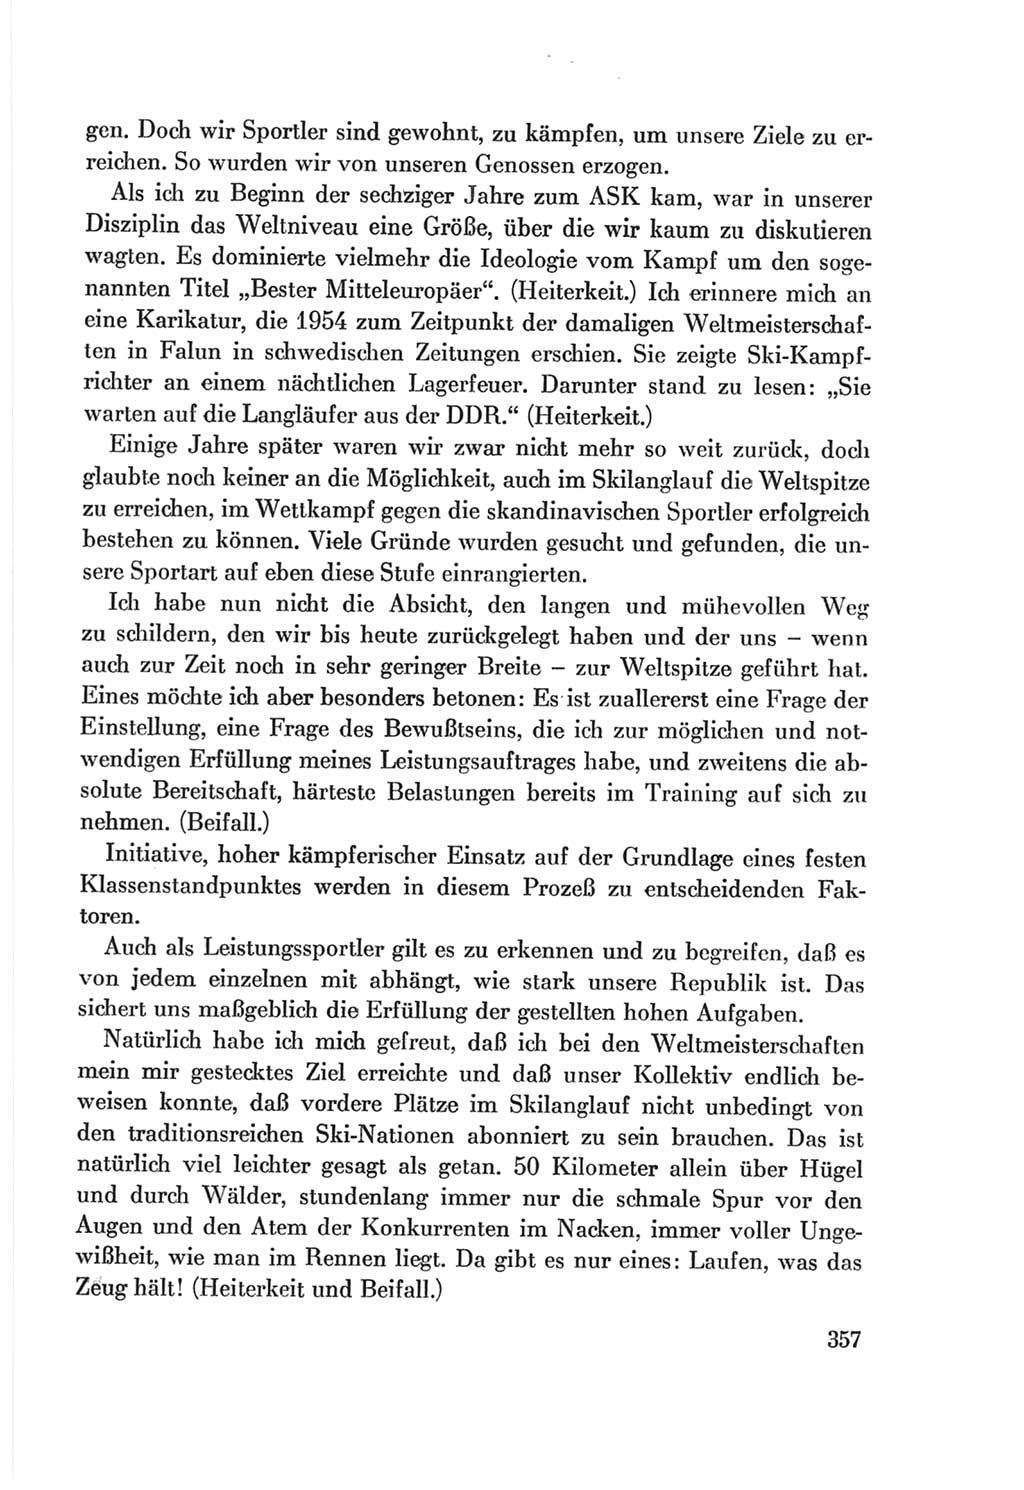 Protokoll der Verhandlungen des Ⅷ. Parteitages der Sozialistischen Einheitspartei Deutschlands (SED) [Deutsche Demokratische Republik (DDR)] 1971, Band 1, Seite 357 (Prot. Verh. Ⅷ. PT SED DDR 1971, Bd. 1, S. 357)